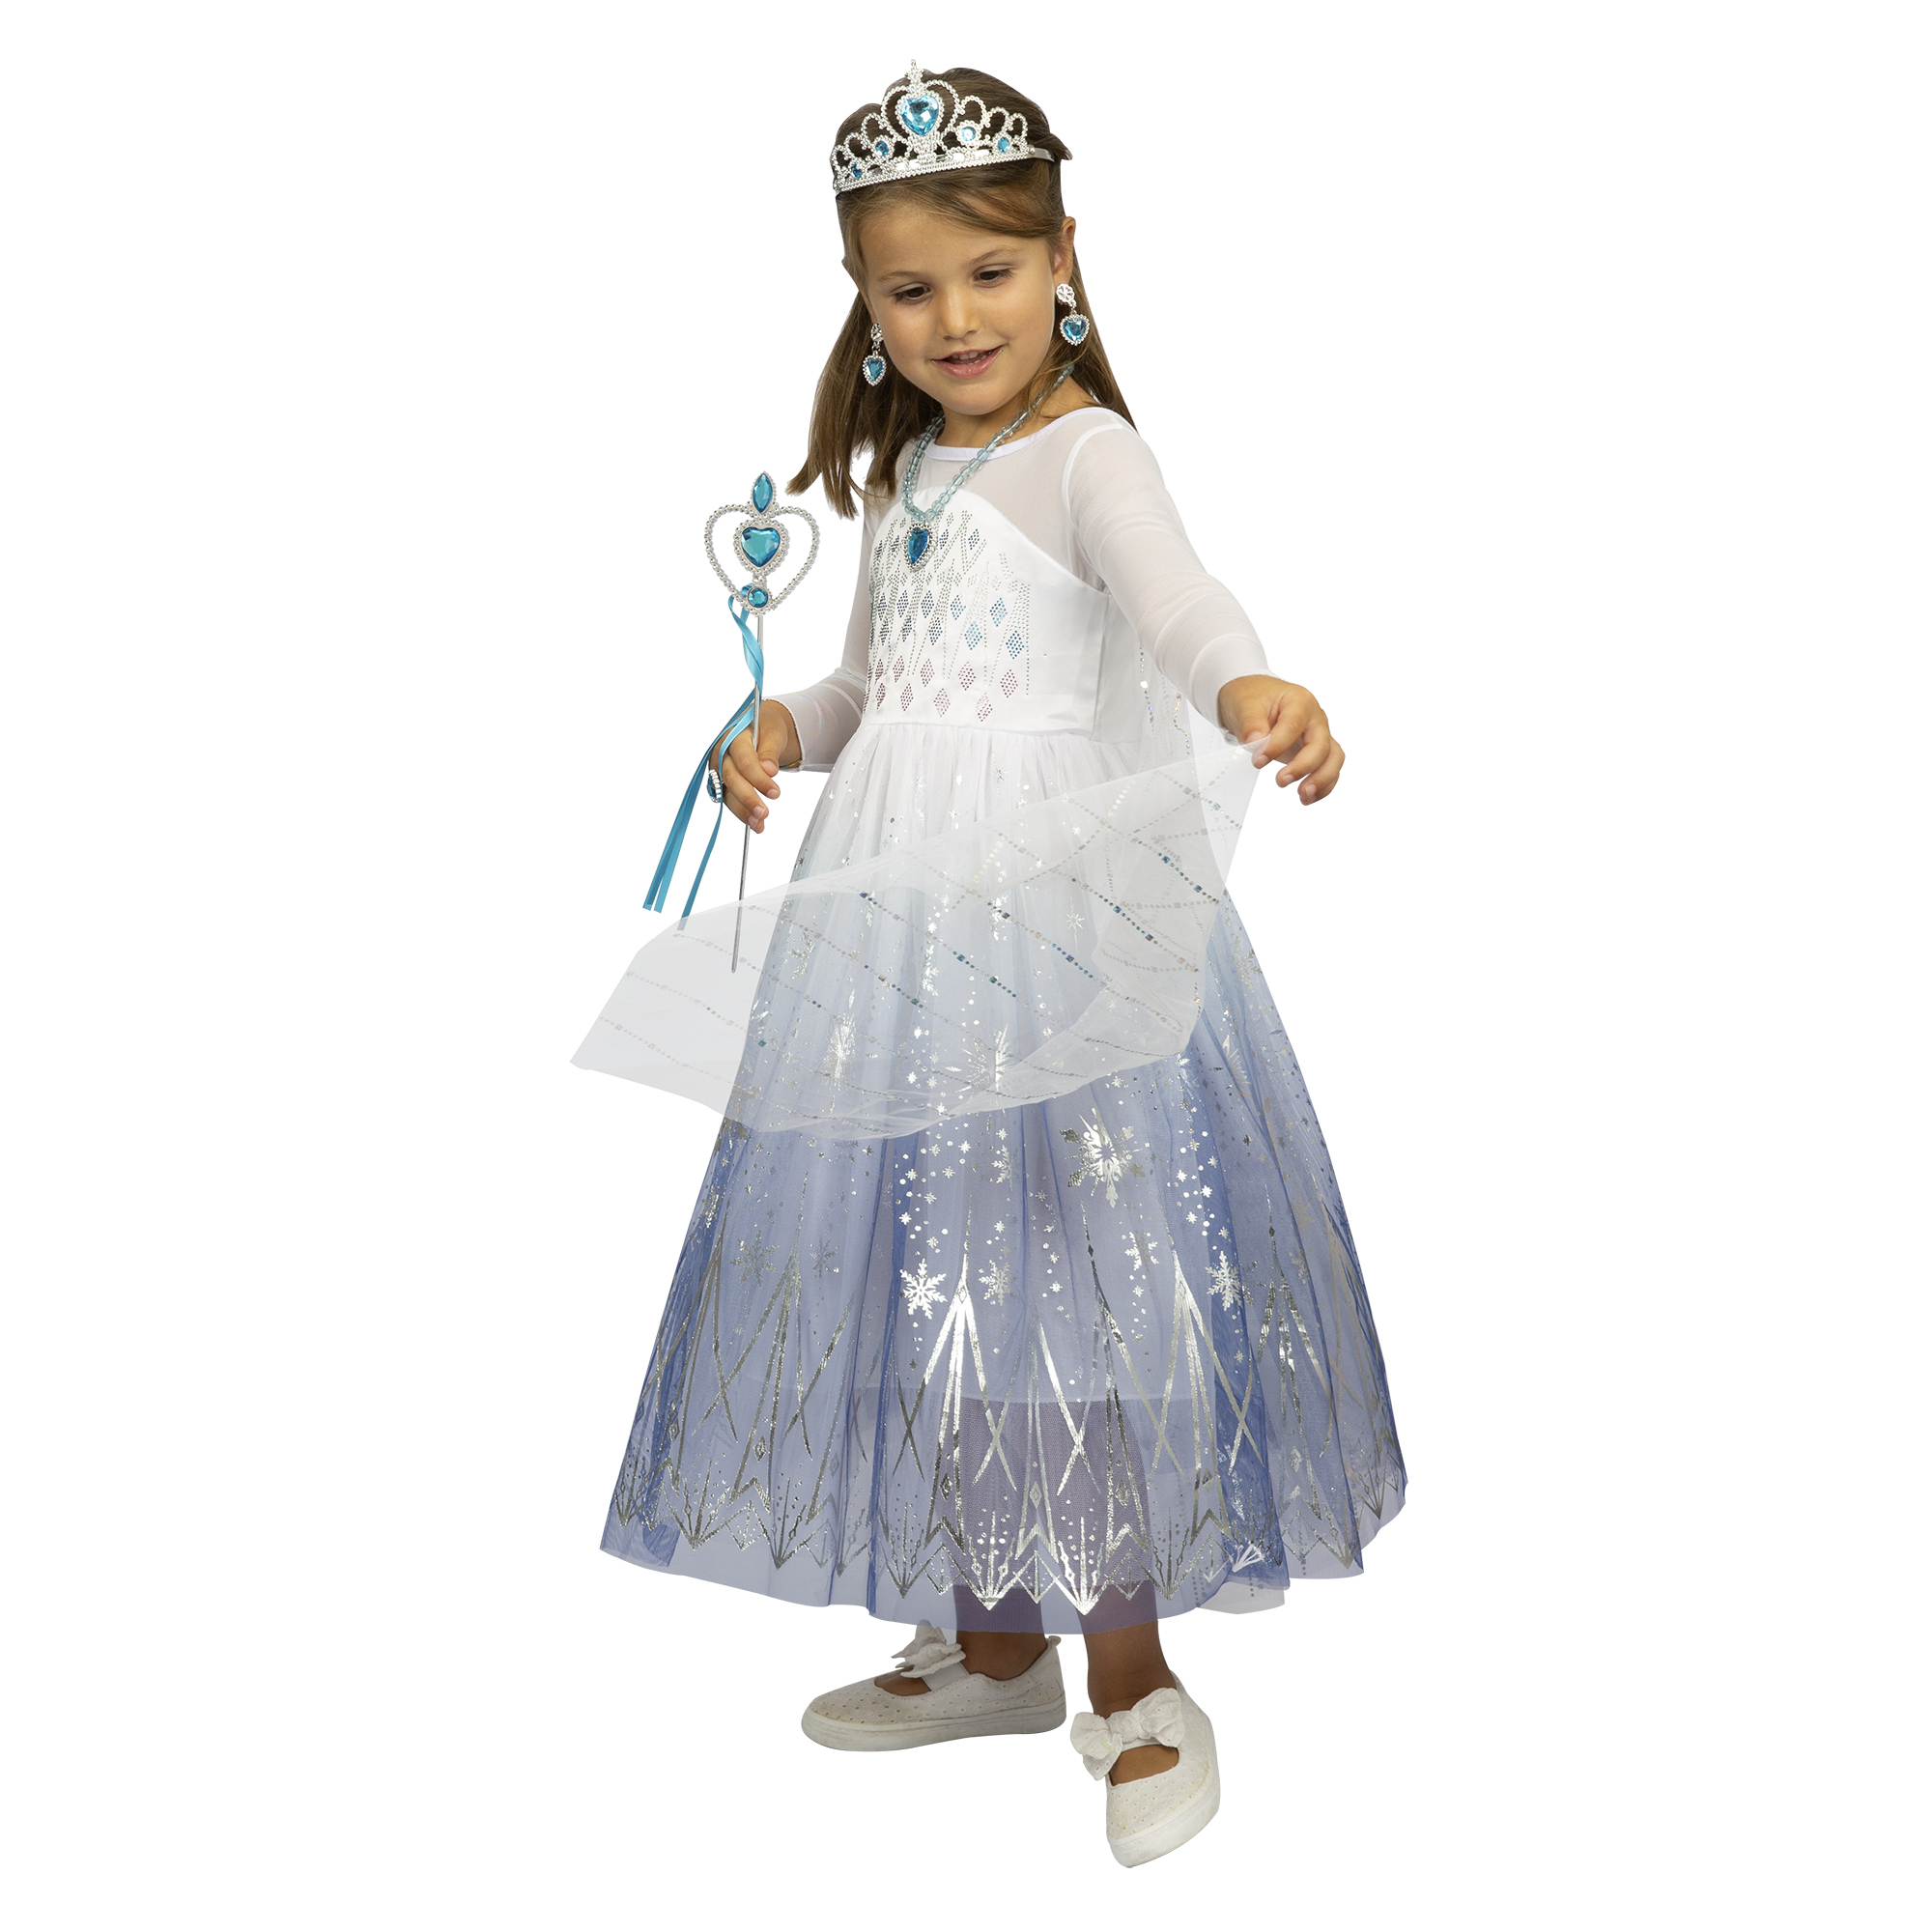 Costume principessa delle nevi disponibile in diverse taglie - MISS FASHION